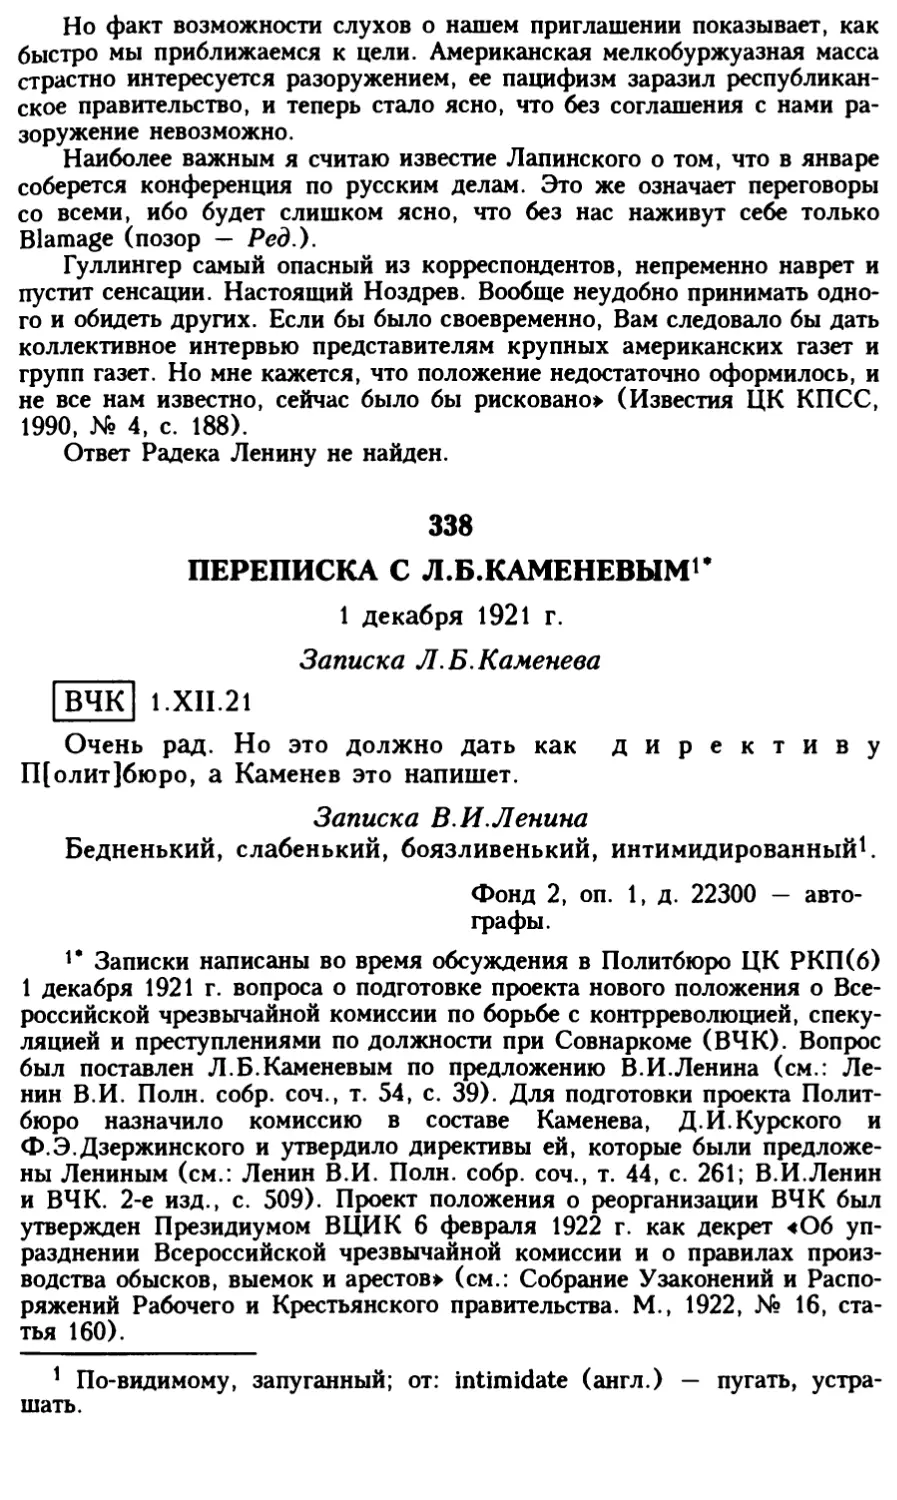 338. Переписка с Л.Б.Каменевым. 1 декабря 1921 г